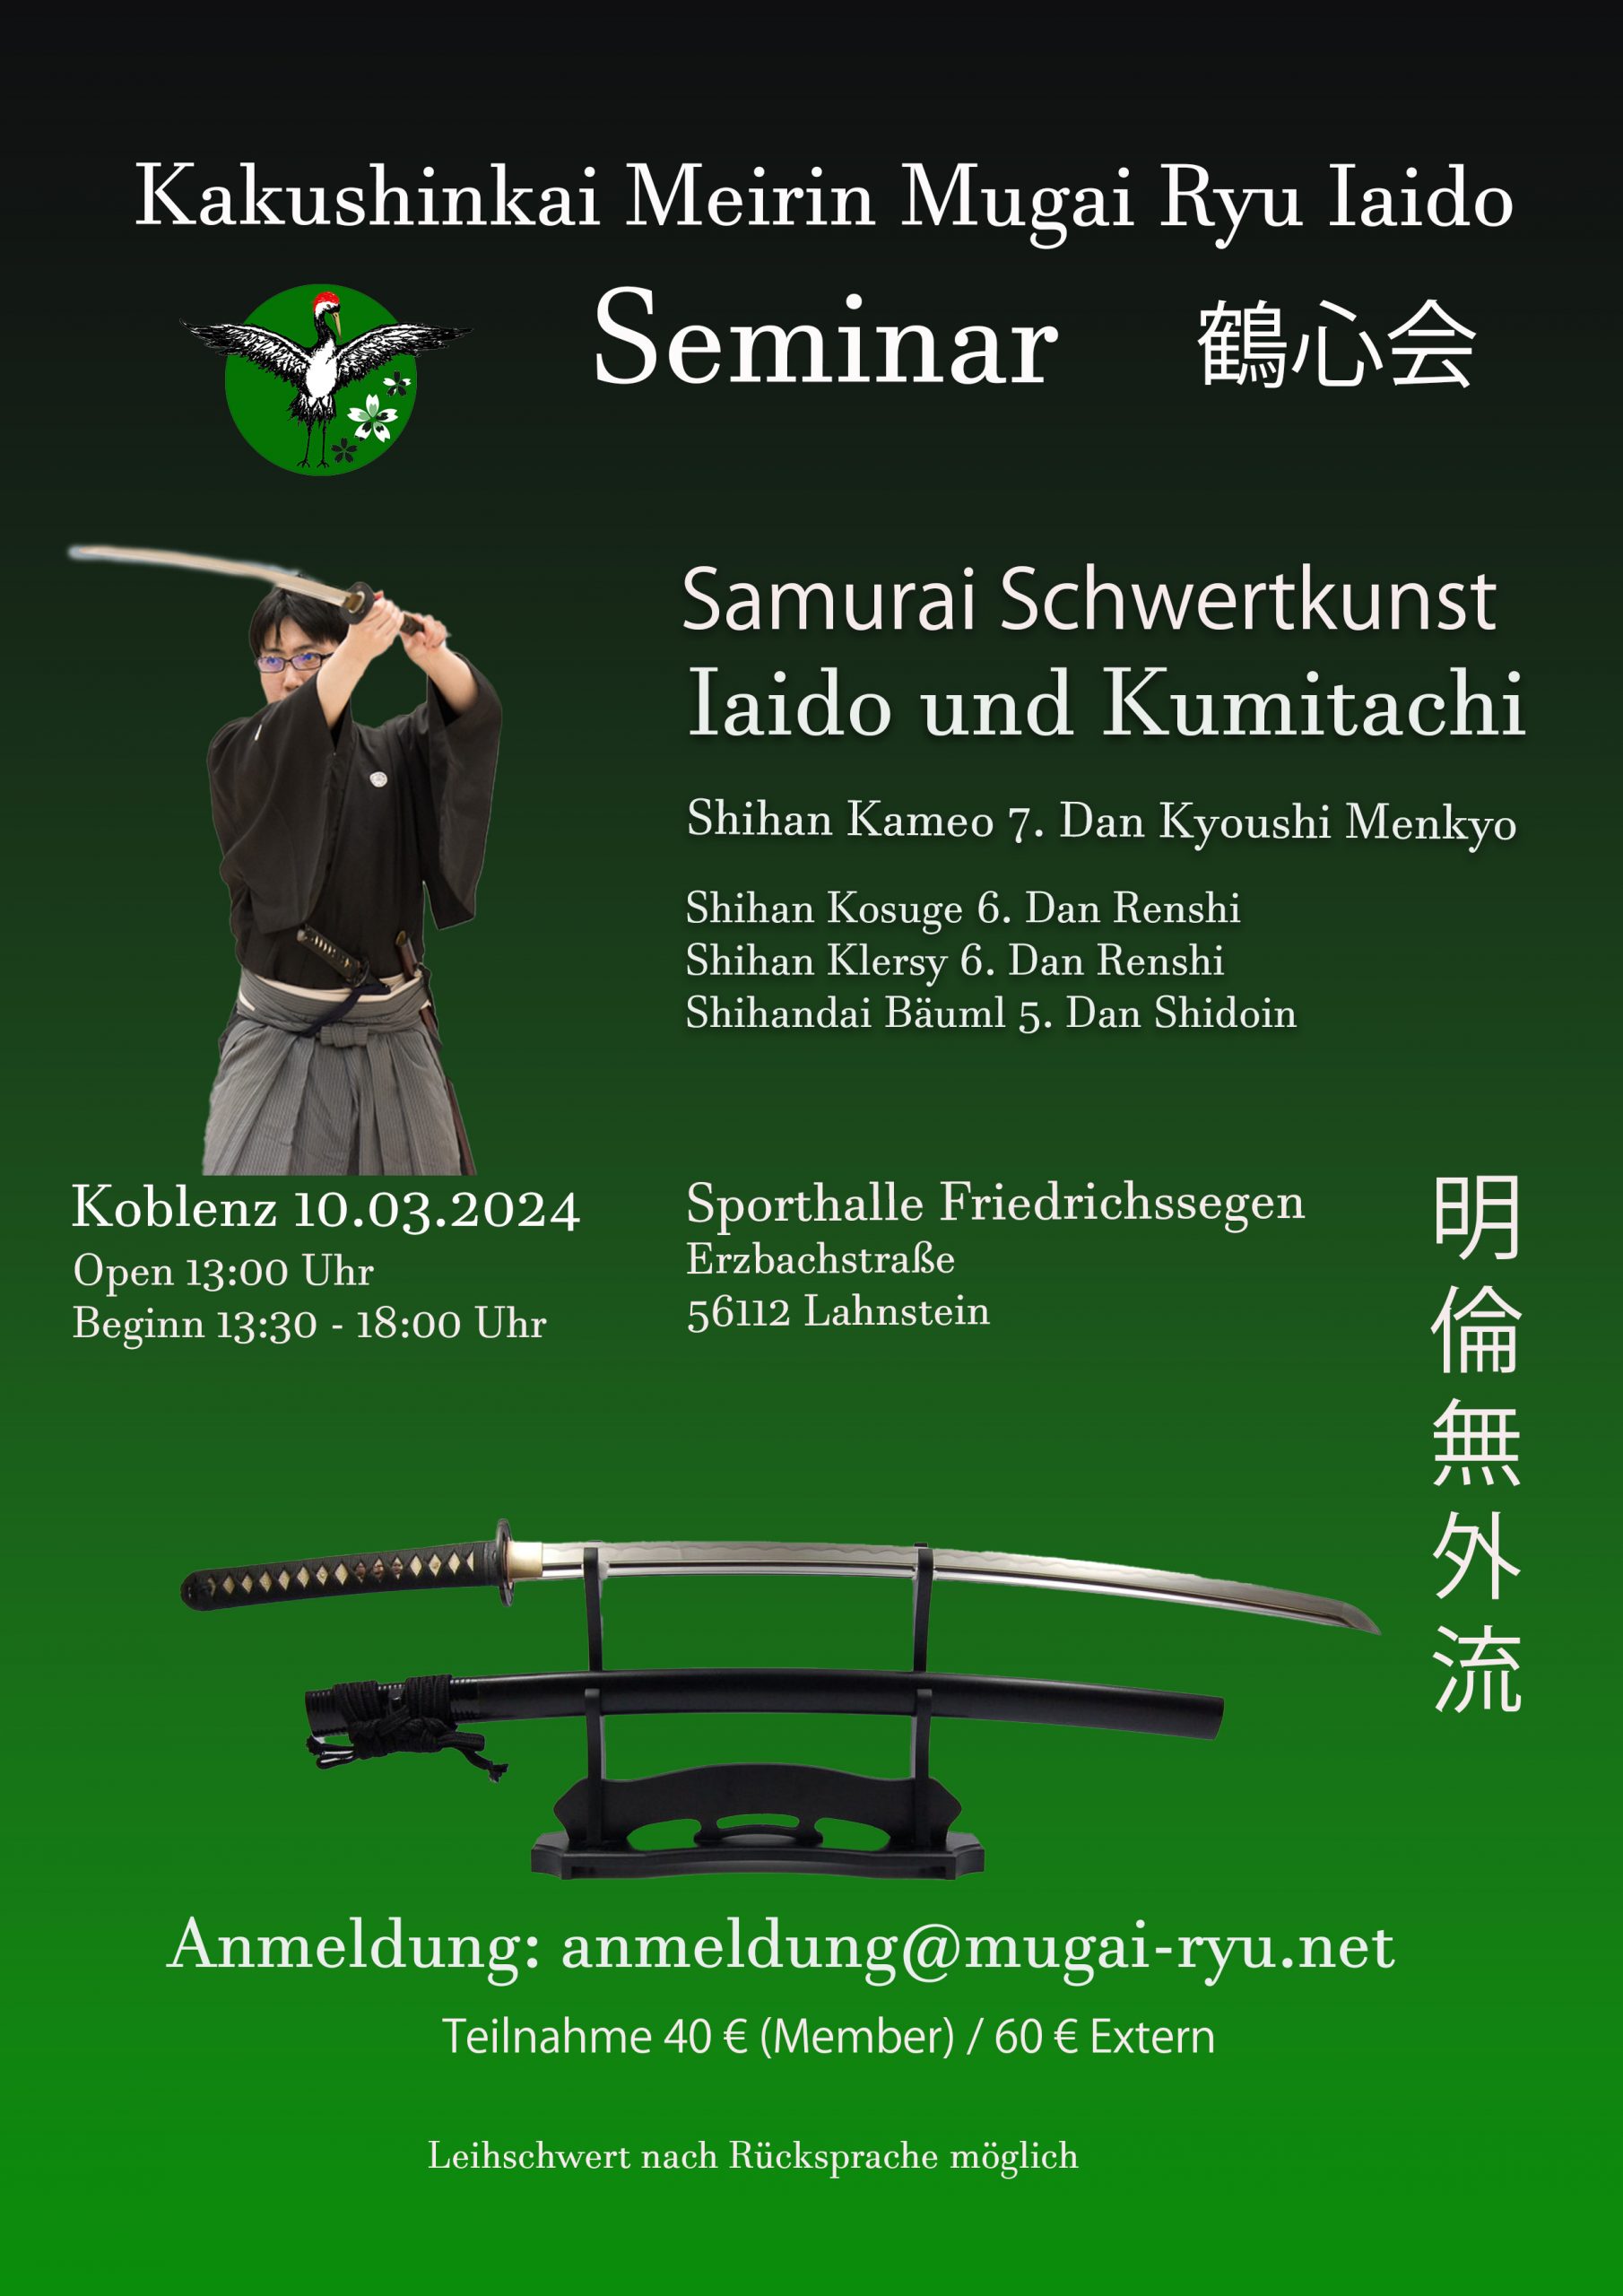 Mugairyu Iaido Schwertkampfkunst Seminar mit Kameo Shihan 7. Dan Kyoushi Menkyo aus Tokio!